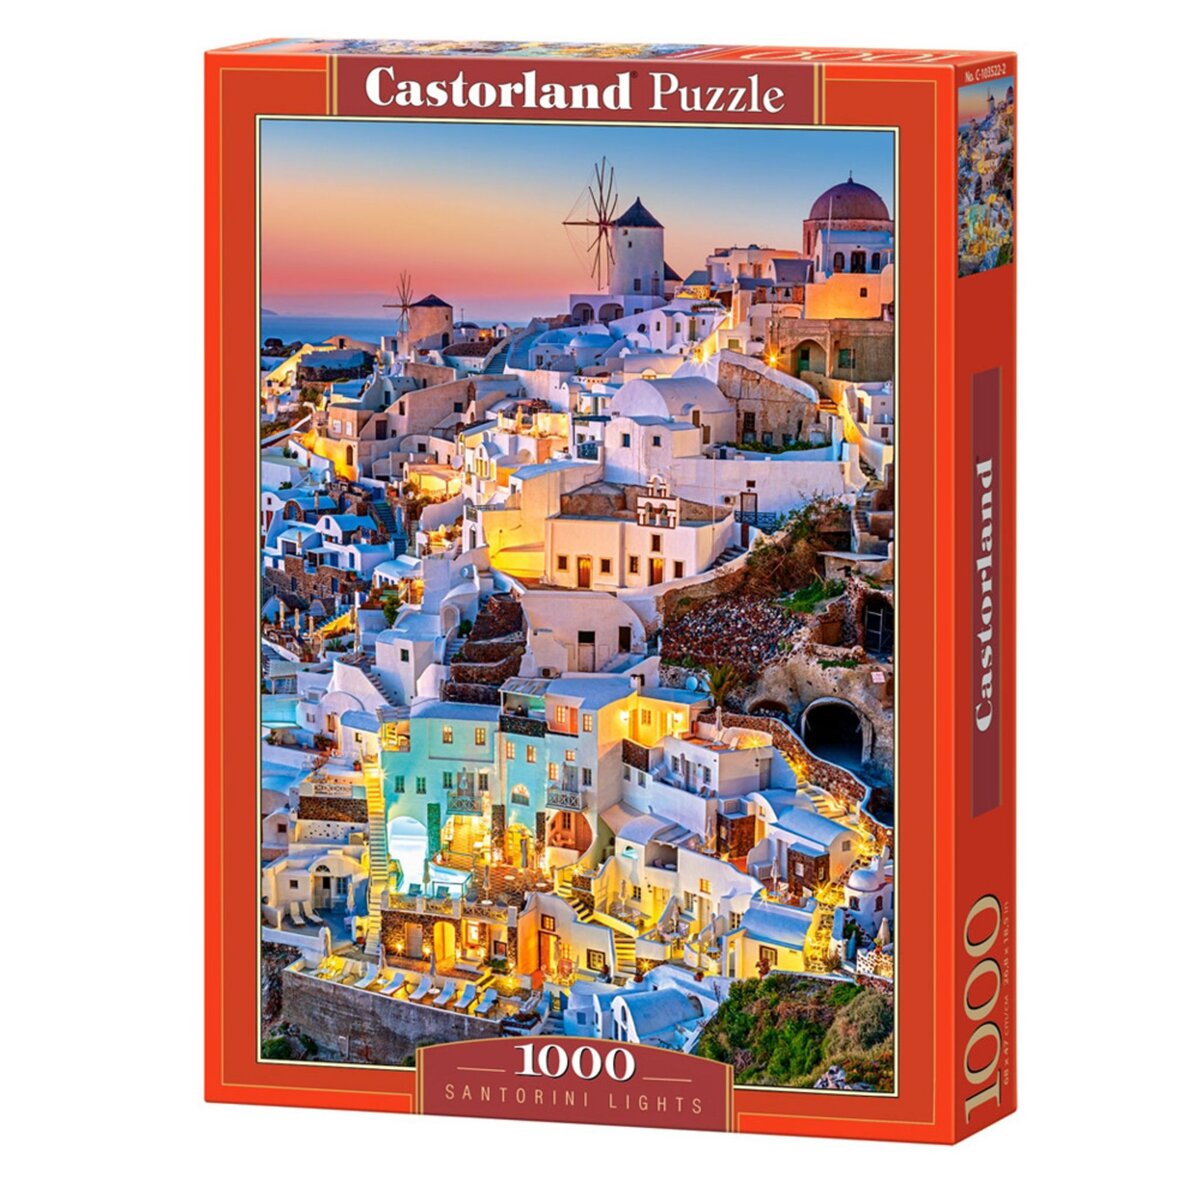 Castorland Puzzle 1000 pièces : Lumières de Santorin pas cher